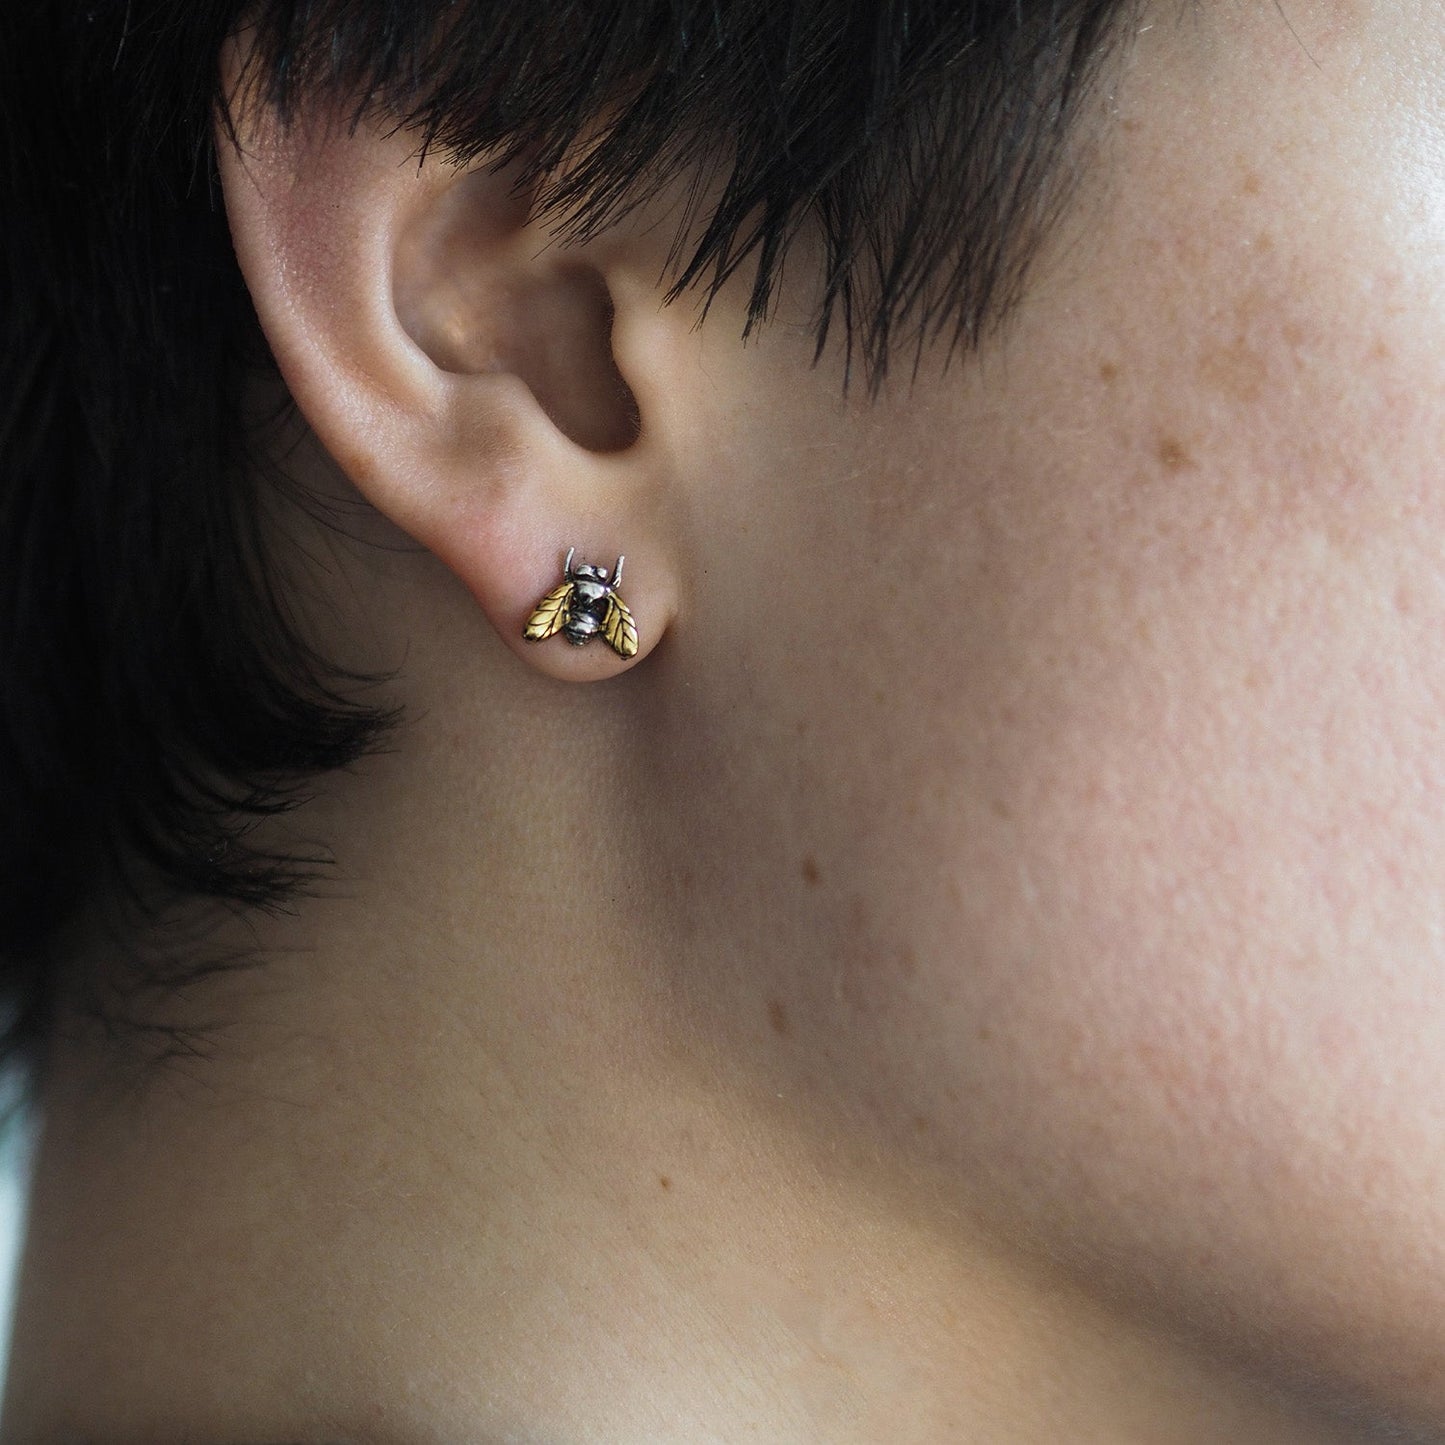 Gilded Little Fly Stud Earrings by Yasmin Everley